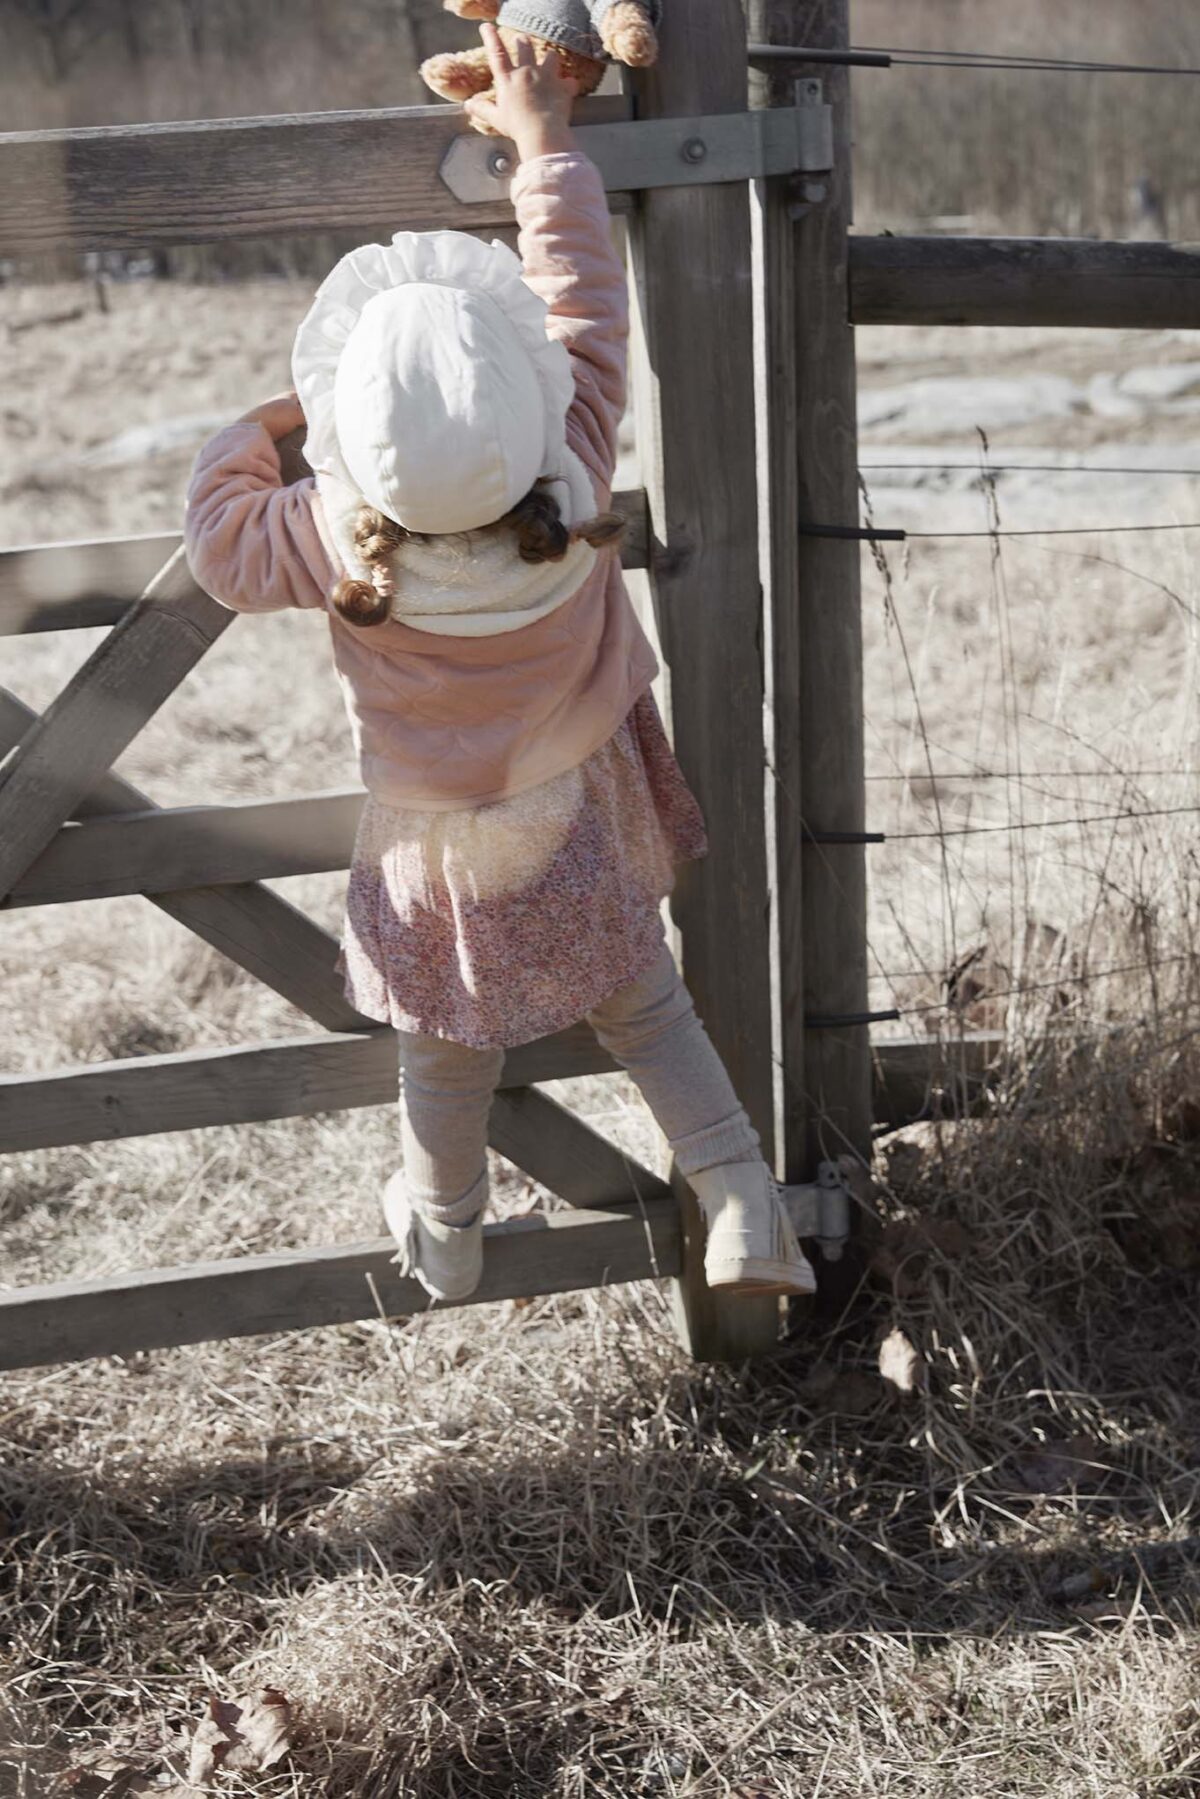 Elodie Details - Winter Bonnet - Creamy White - 1-2 Years - Ubrania I Akcesoria &Gt; Ubrania &Gt; Ubrania Dla Dzieci I Niemowląt &Gt; Ubrania Wierzchnie Dla Dzieci I Niemowląt